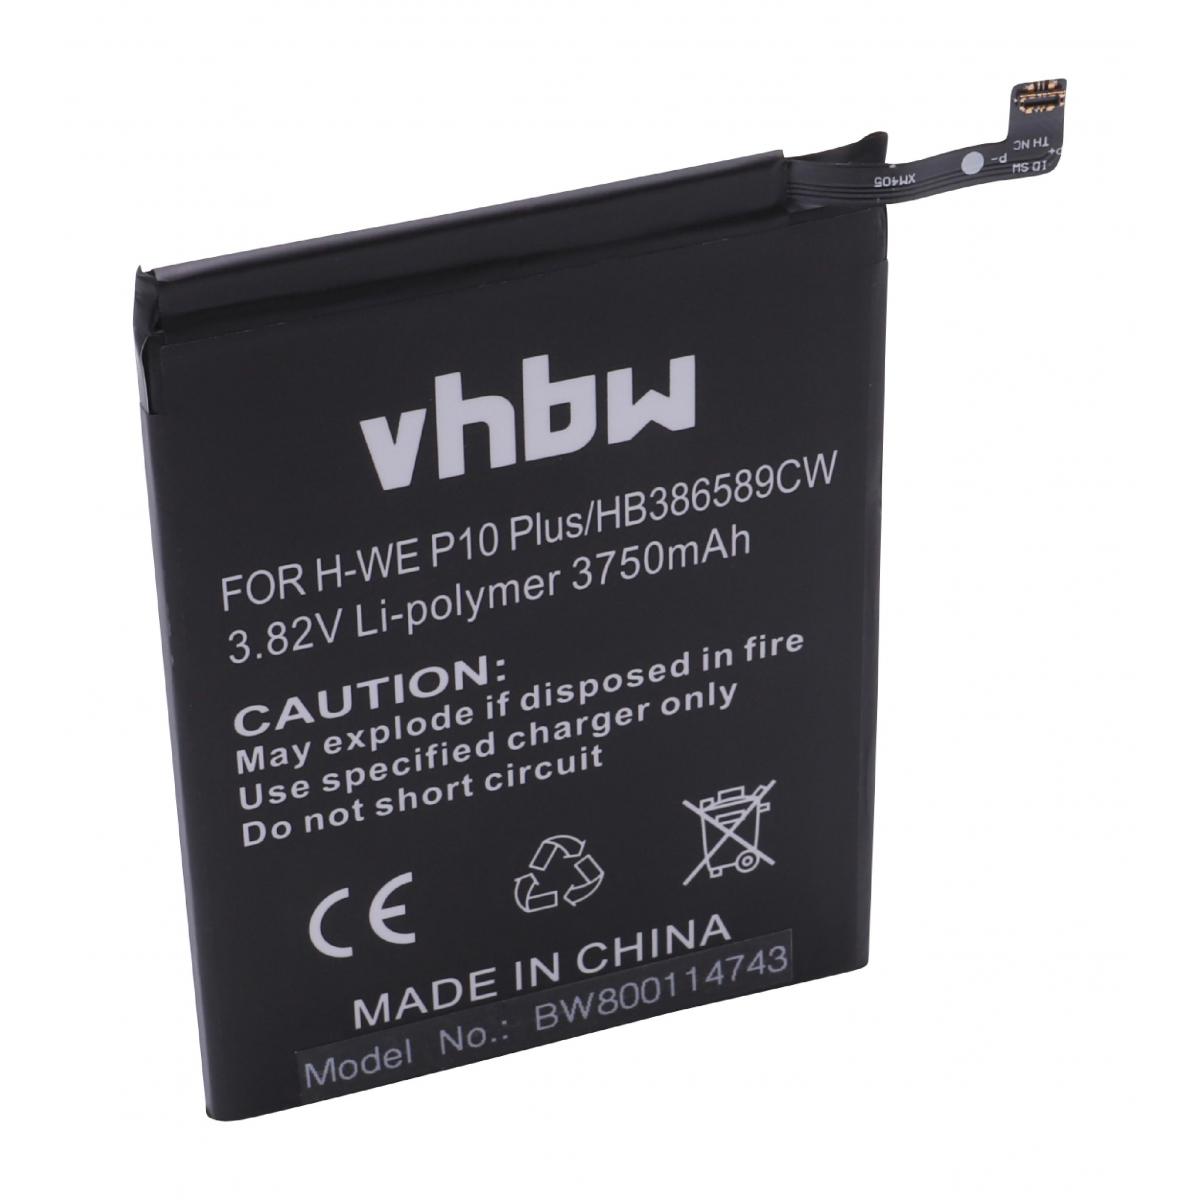 Vhbw - vhbw batterie compatible avec Huawei P10 Plus Premium Edition Dual, VKY-AL00, VKY-L09 smartphone (3750mAh, 3,82V, Li-polymère) - Batterie téléphone